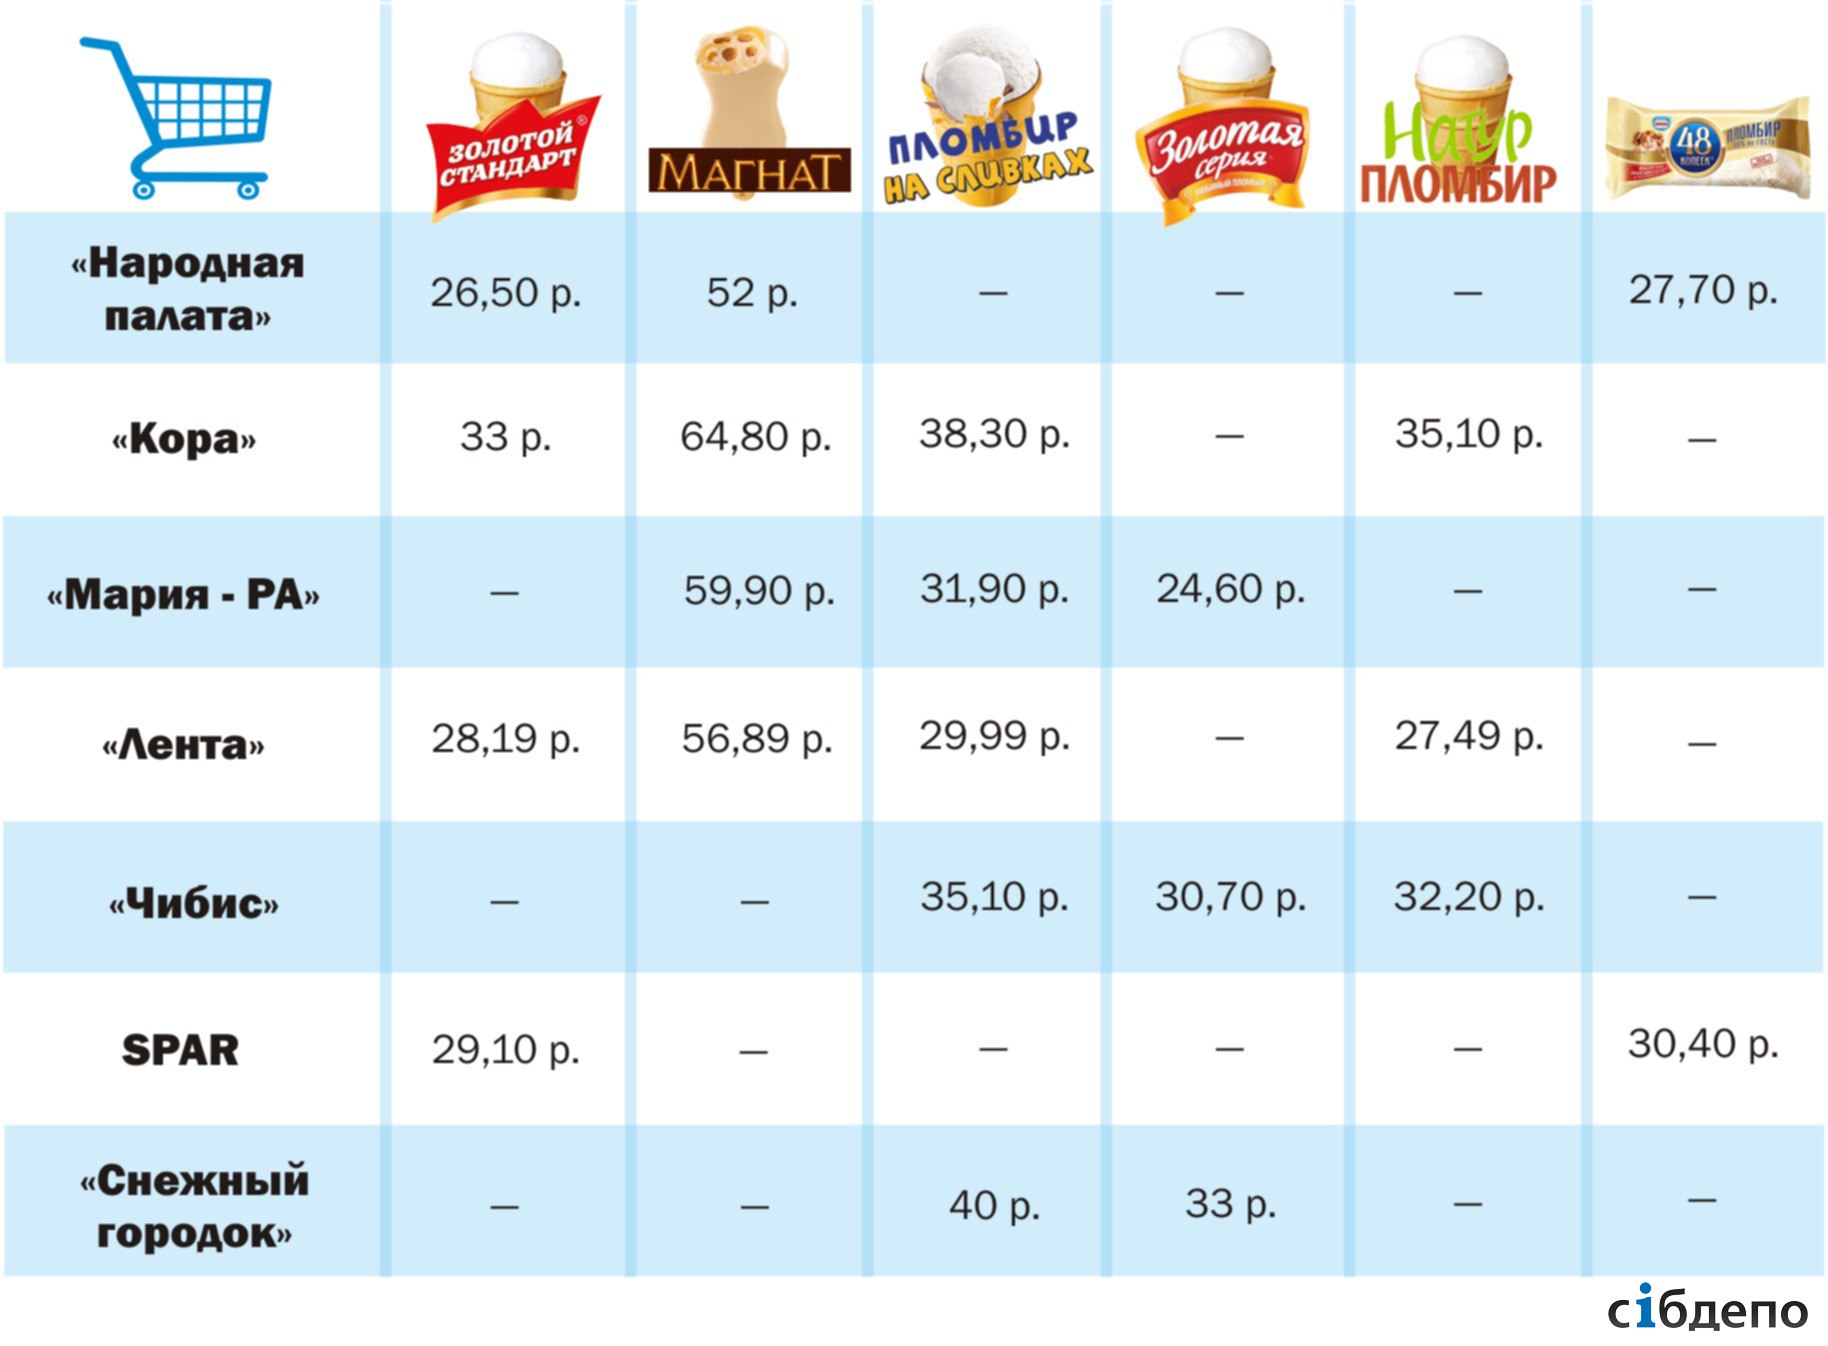 Цена недели- сколько в Кемерове стоит мороженое .jpg